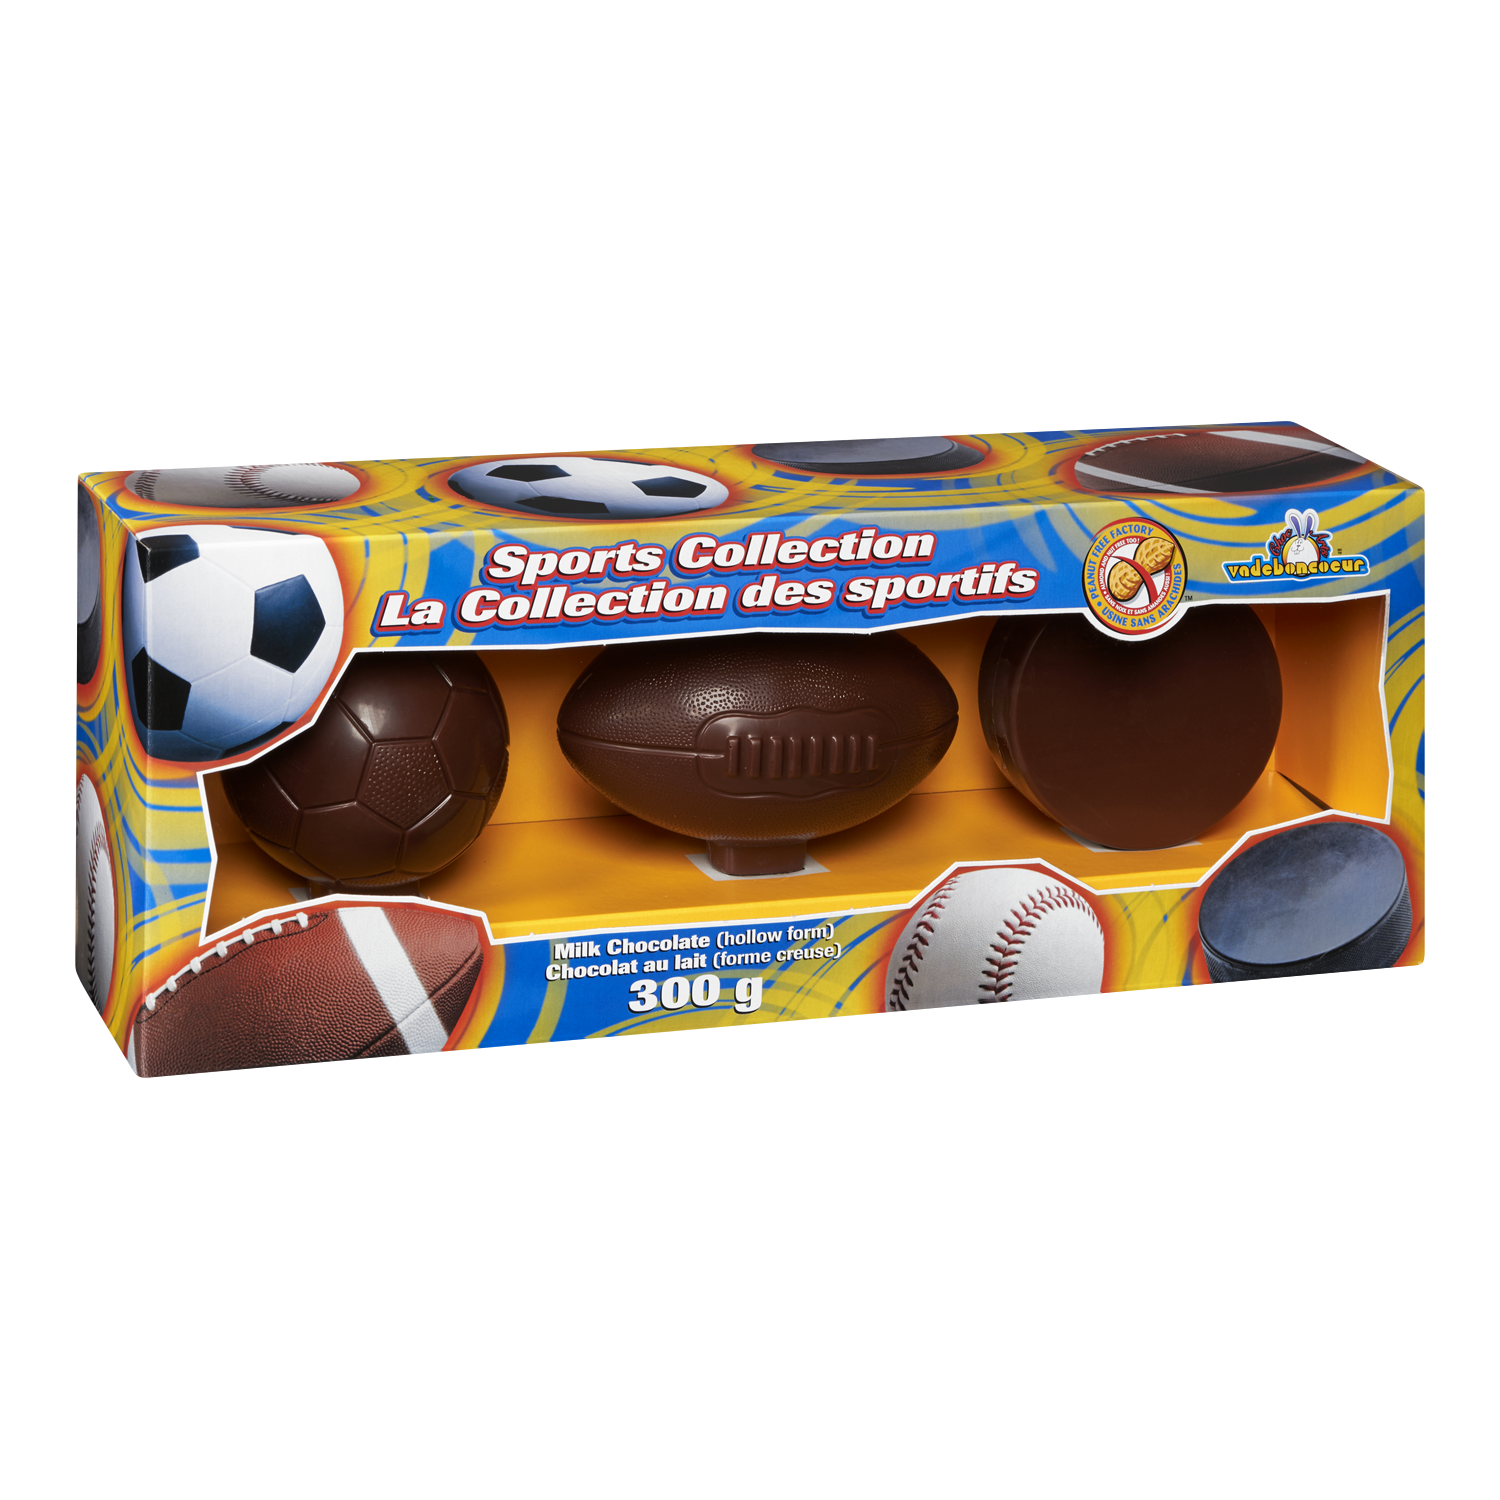 Chocolat ballon de football - Chocolat